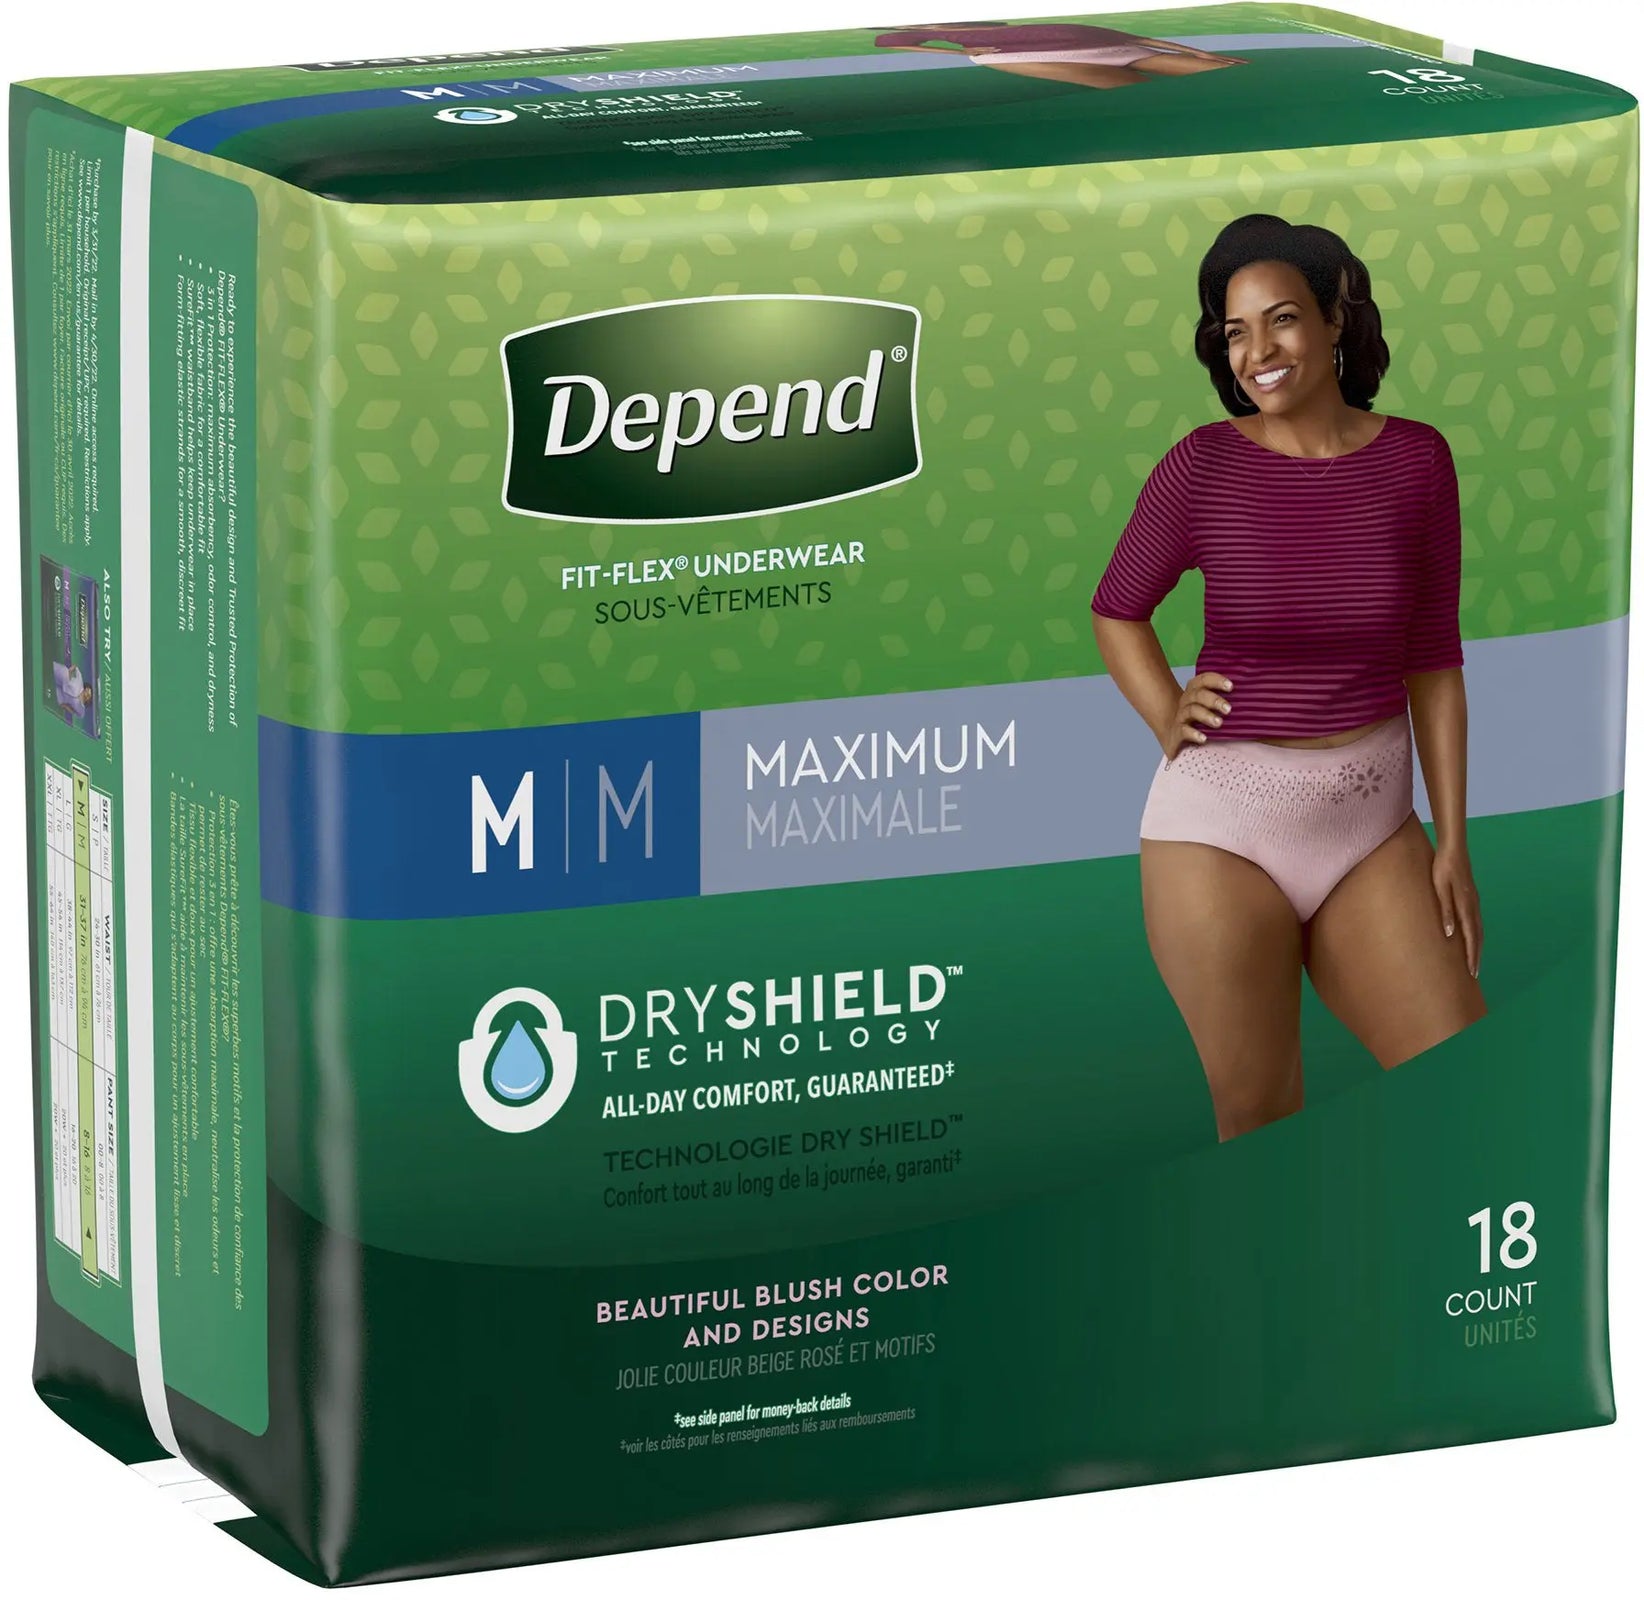 Depend Fit-Flex Underwear For Women